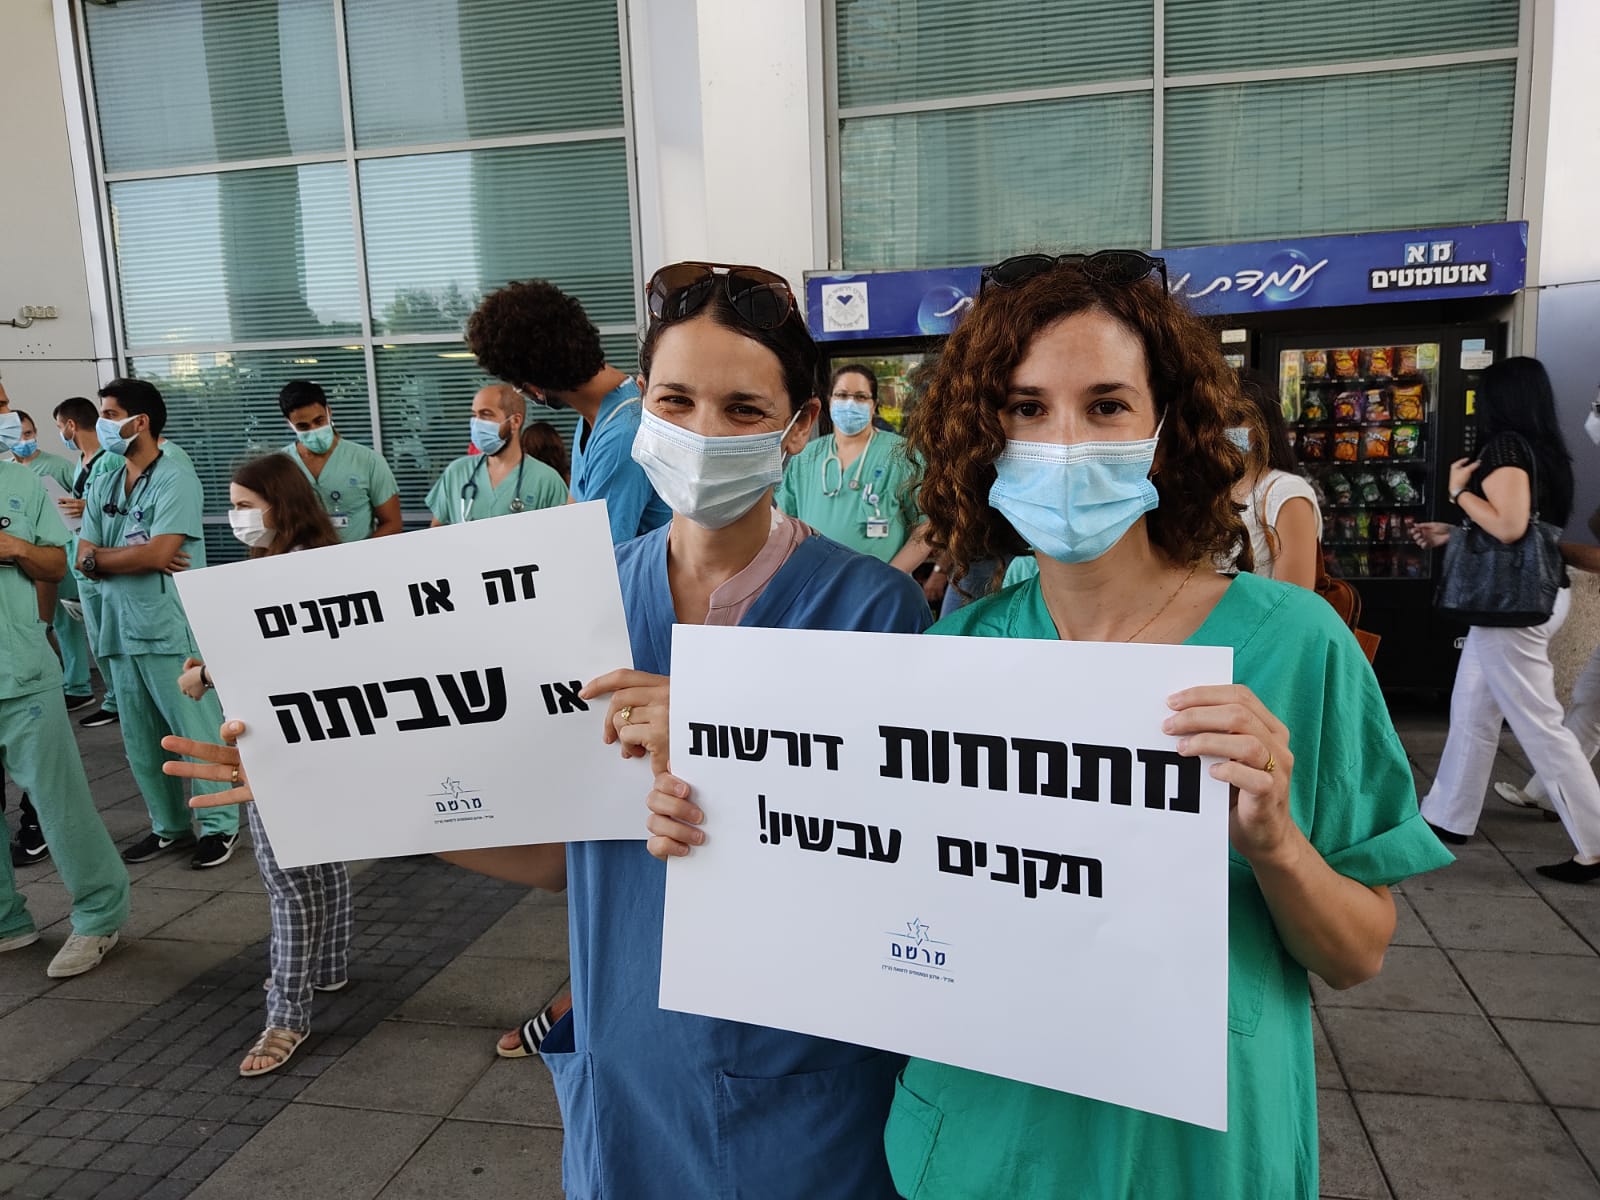 רופאות מתמחות בשביתת מחאה בבית החולים איכילוב בתל אביב בדרישה לתוספת תקנים, 20 ביולי 2020 (צילום: יואב רימר)